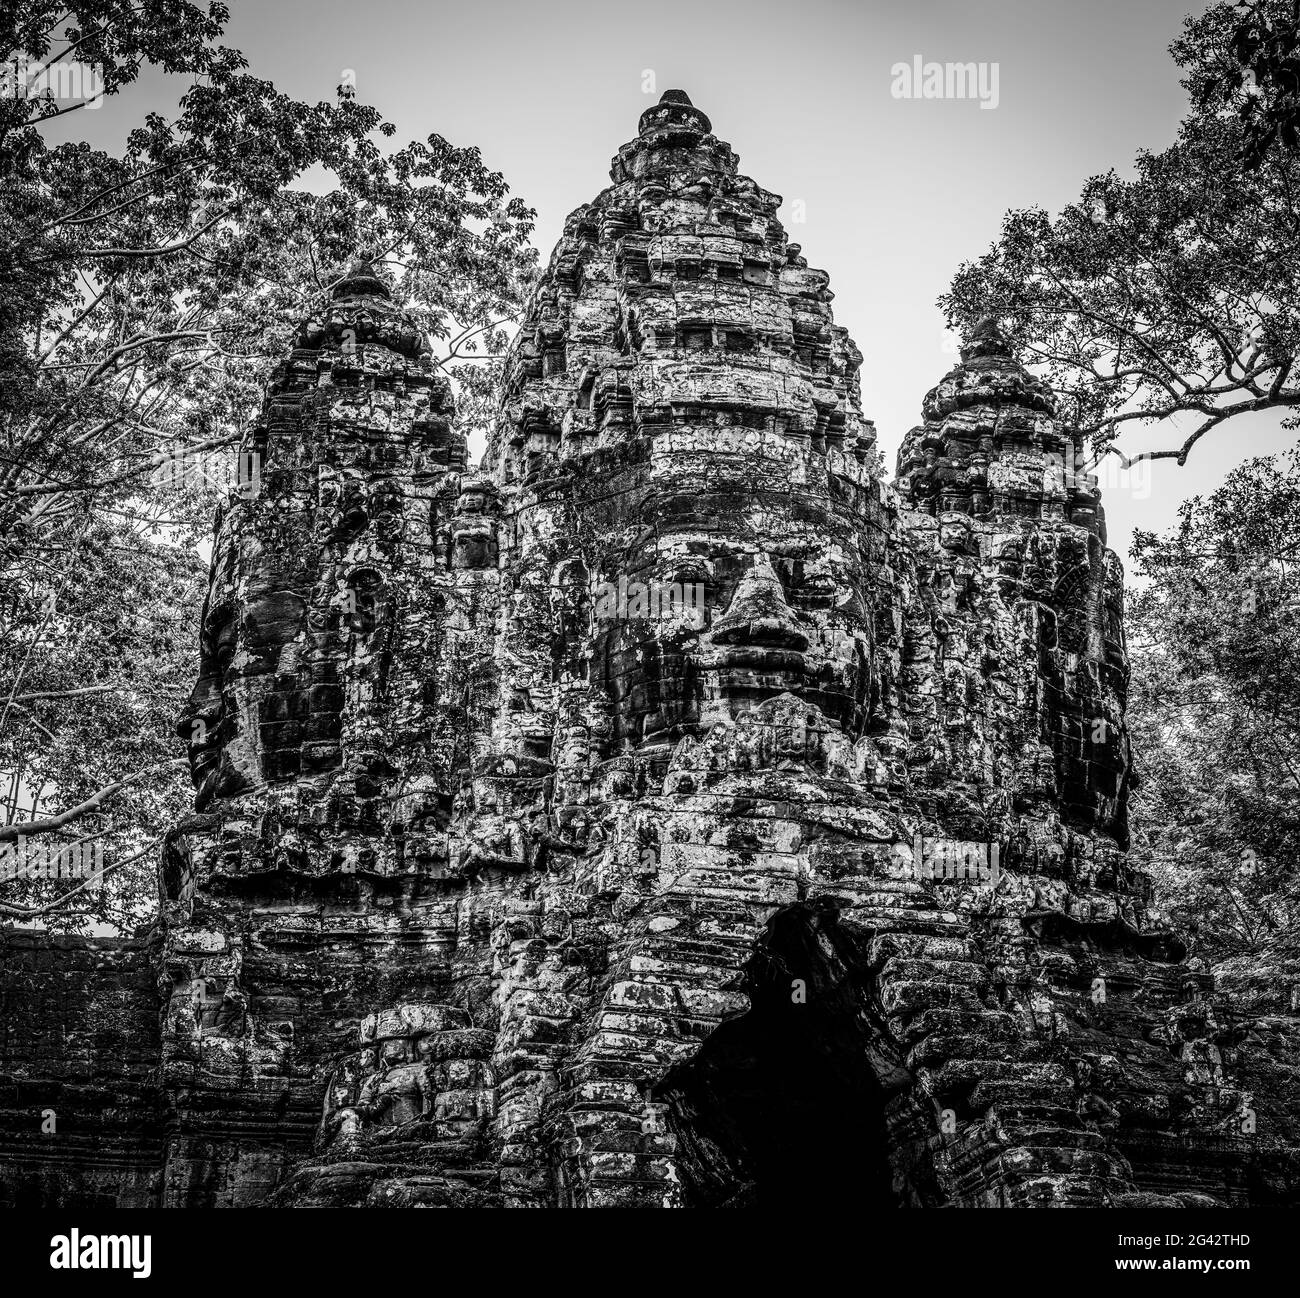 Puerta Norte de Angkor Thom La ruina del Templo en blanco y negro, Angkor Wat Parque Arqueológico, Siem Reap, Camboya Foto de stock